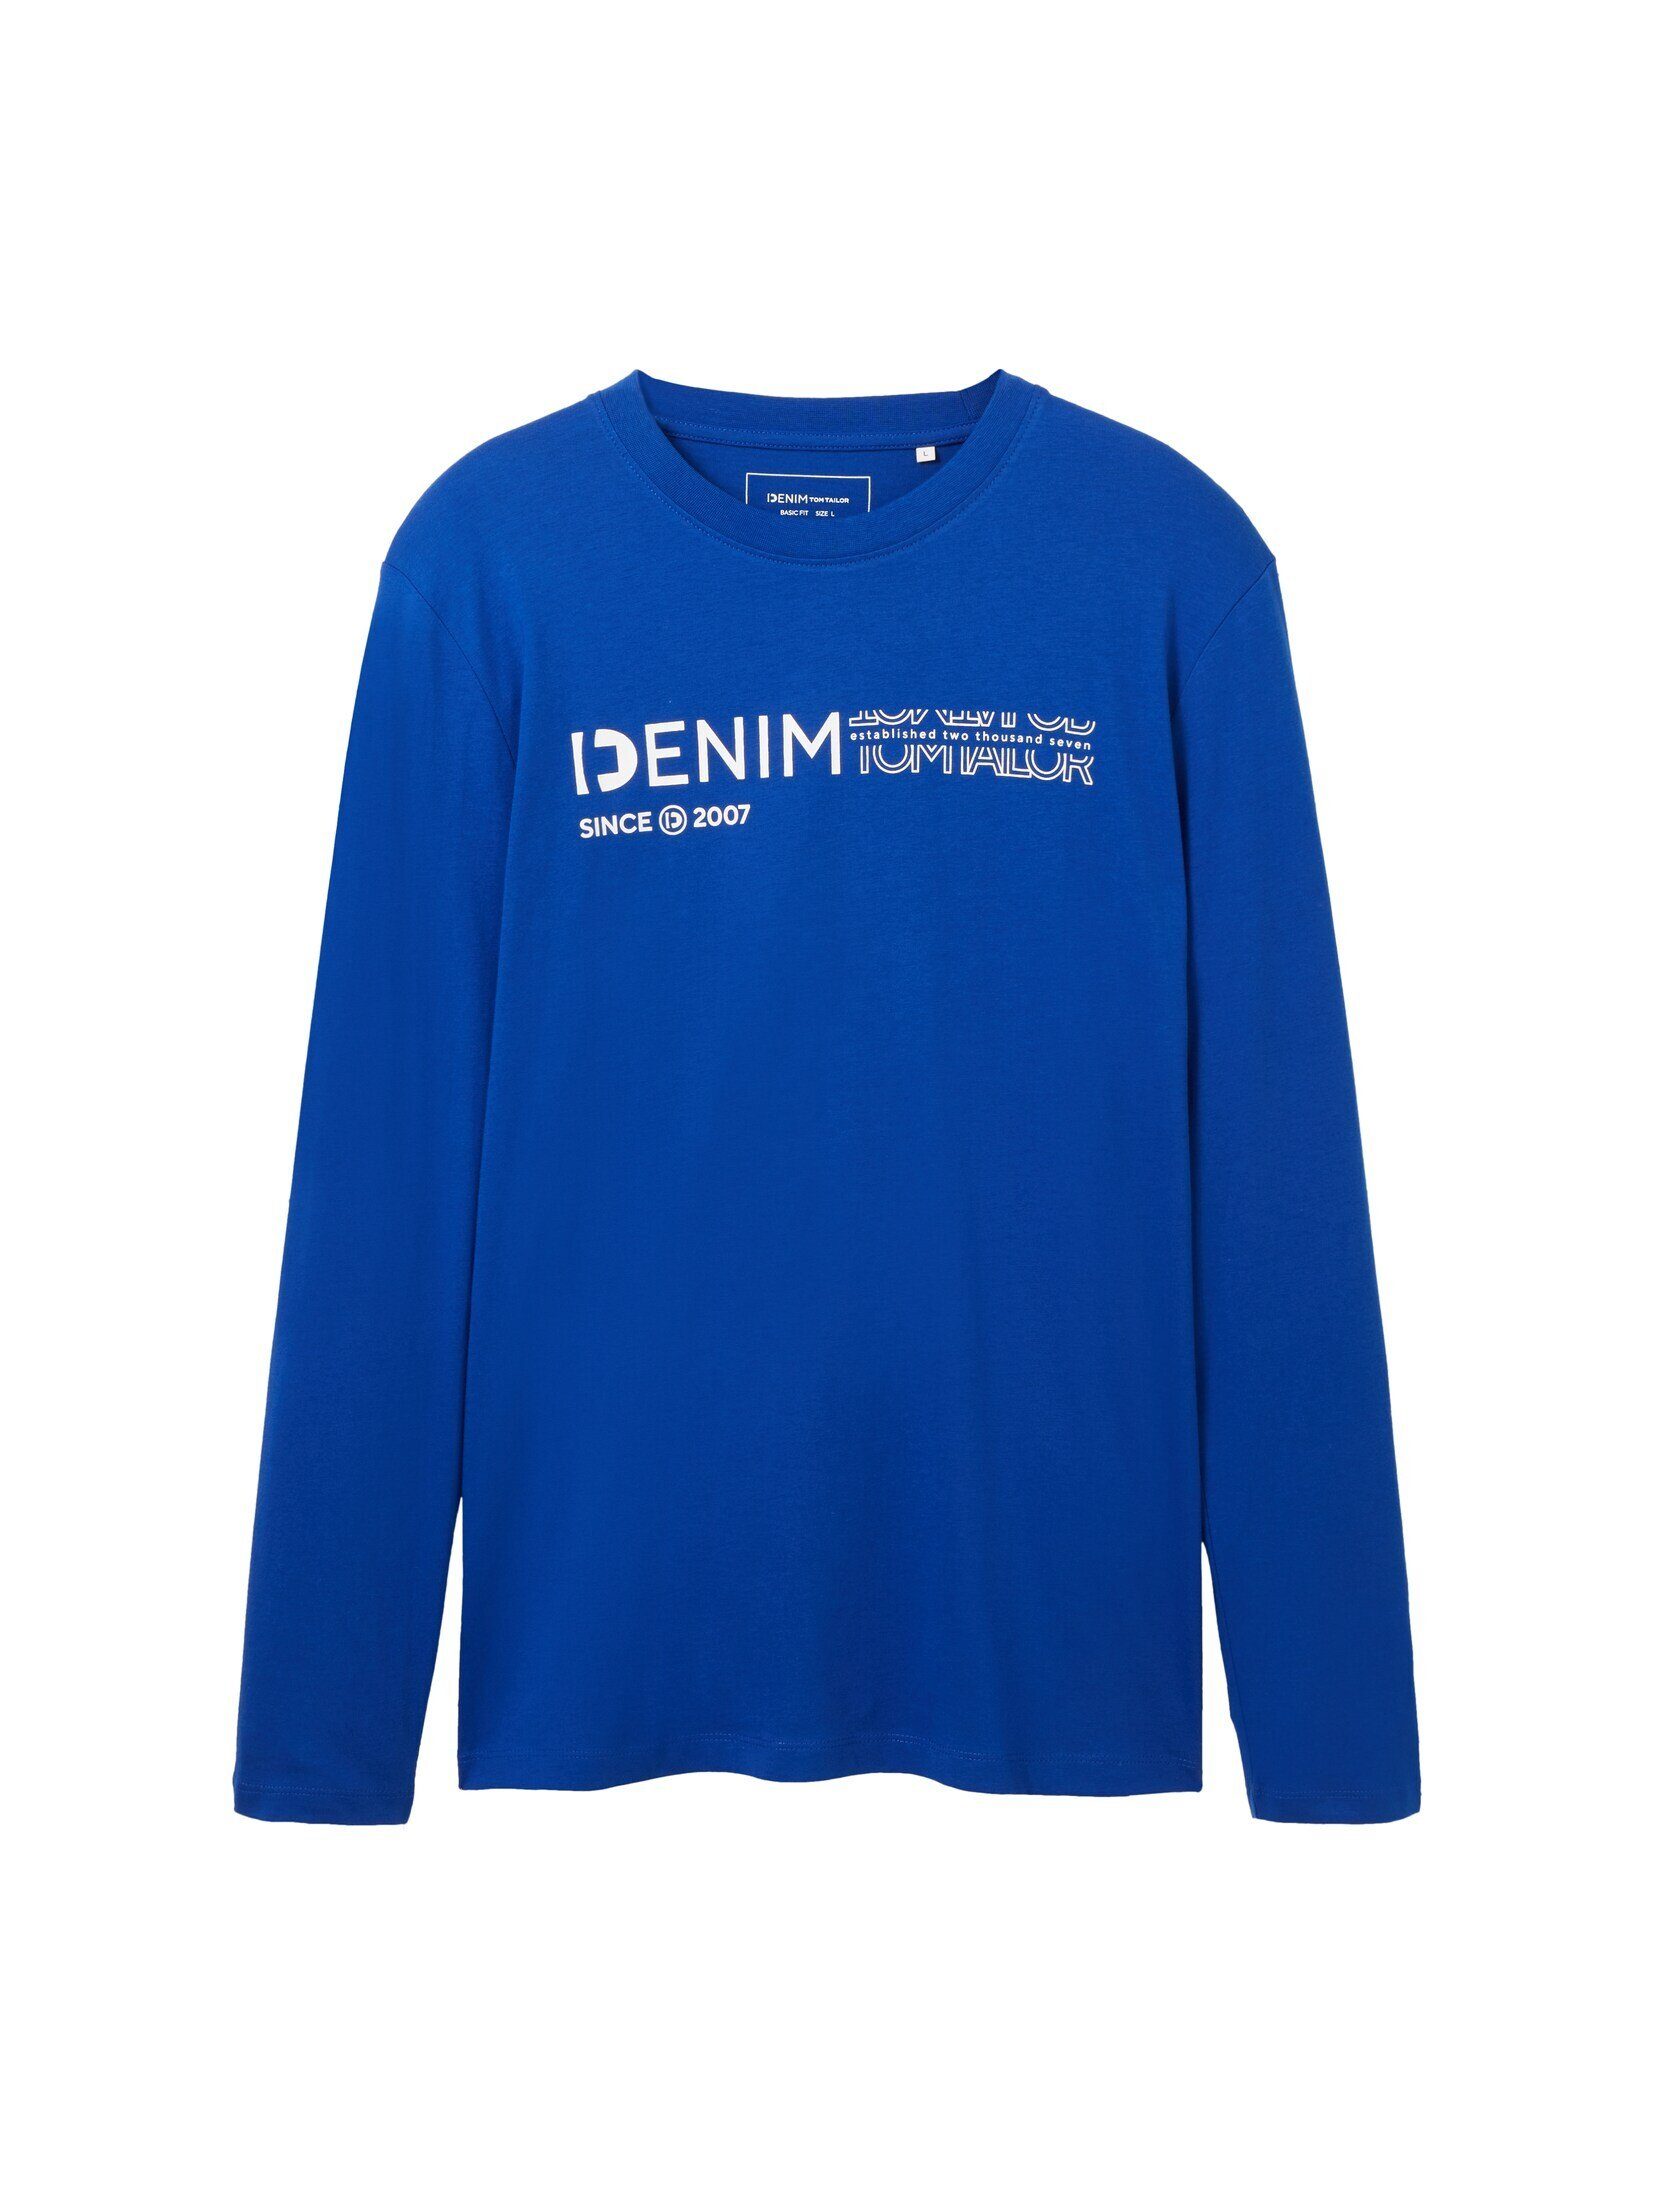 TAILOR TOM Logo royal blue Langarmshirt Denim shiny mit T-Shirt Print